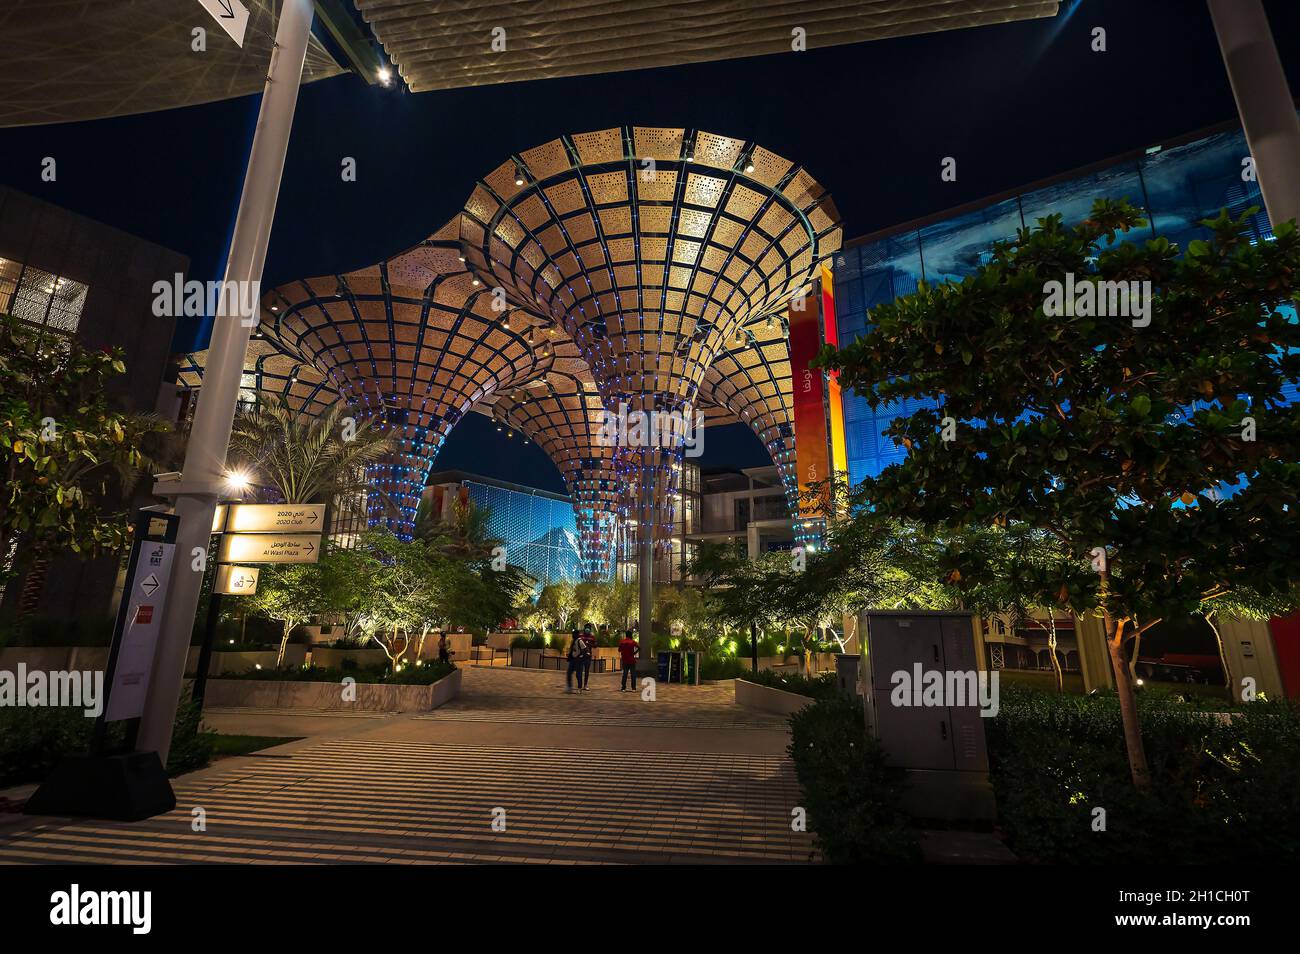 Dubai, Vereinigte Arabische Emirate - 3. Oktober 2020: Nachtansicht im Mobility Pavilion Avenue auf der Dubai EXPO 2020 mit charakteristischer Architektur beleuchtet Stockfoto